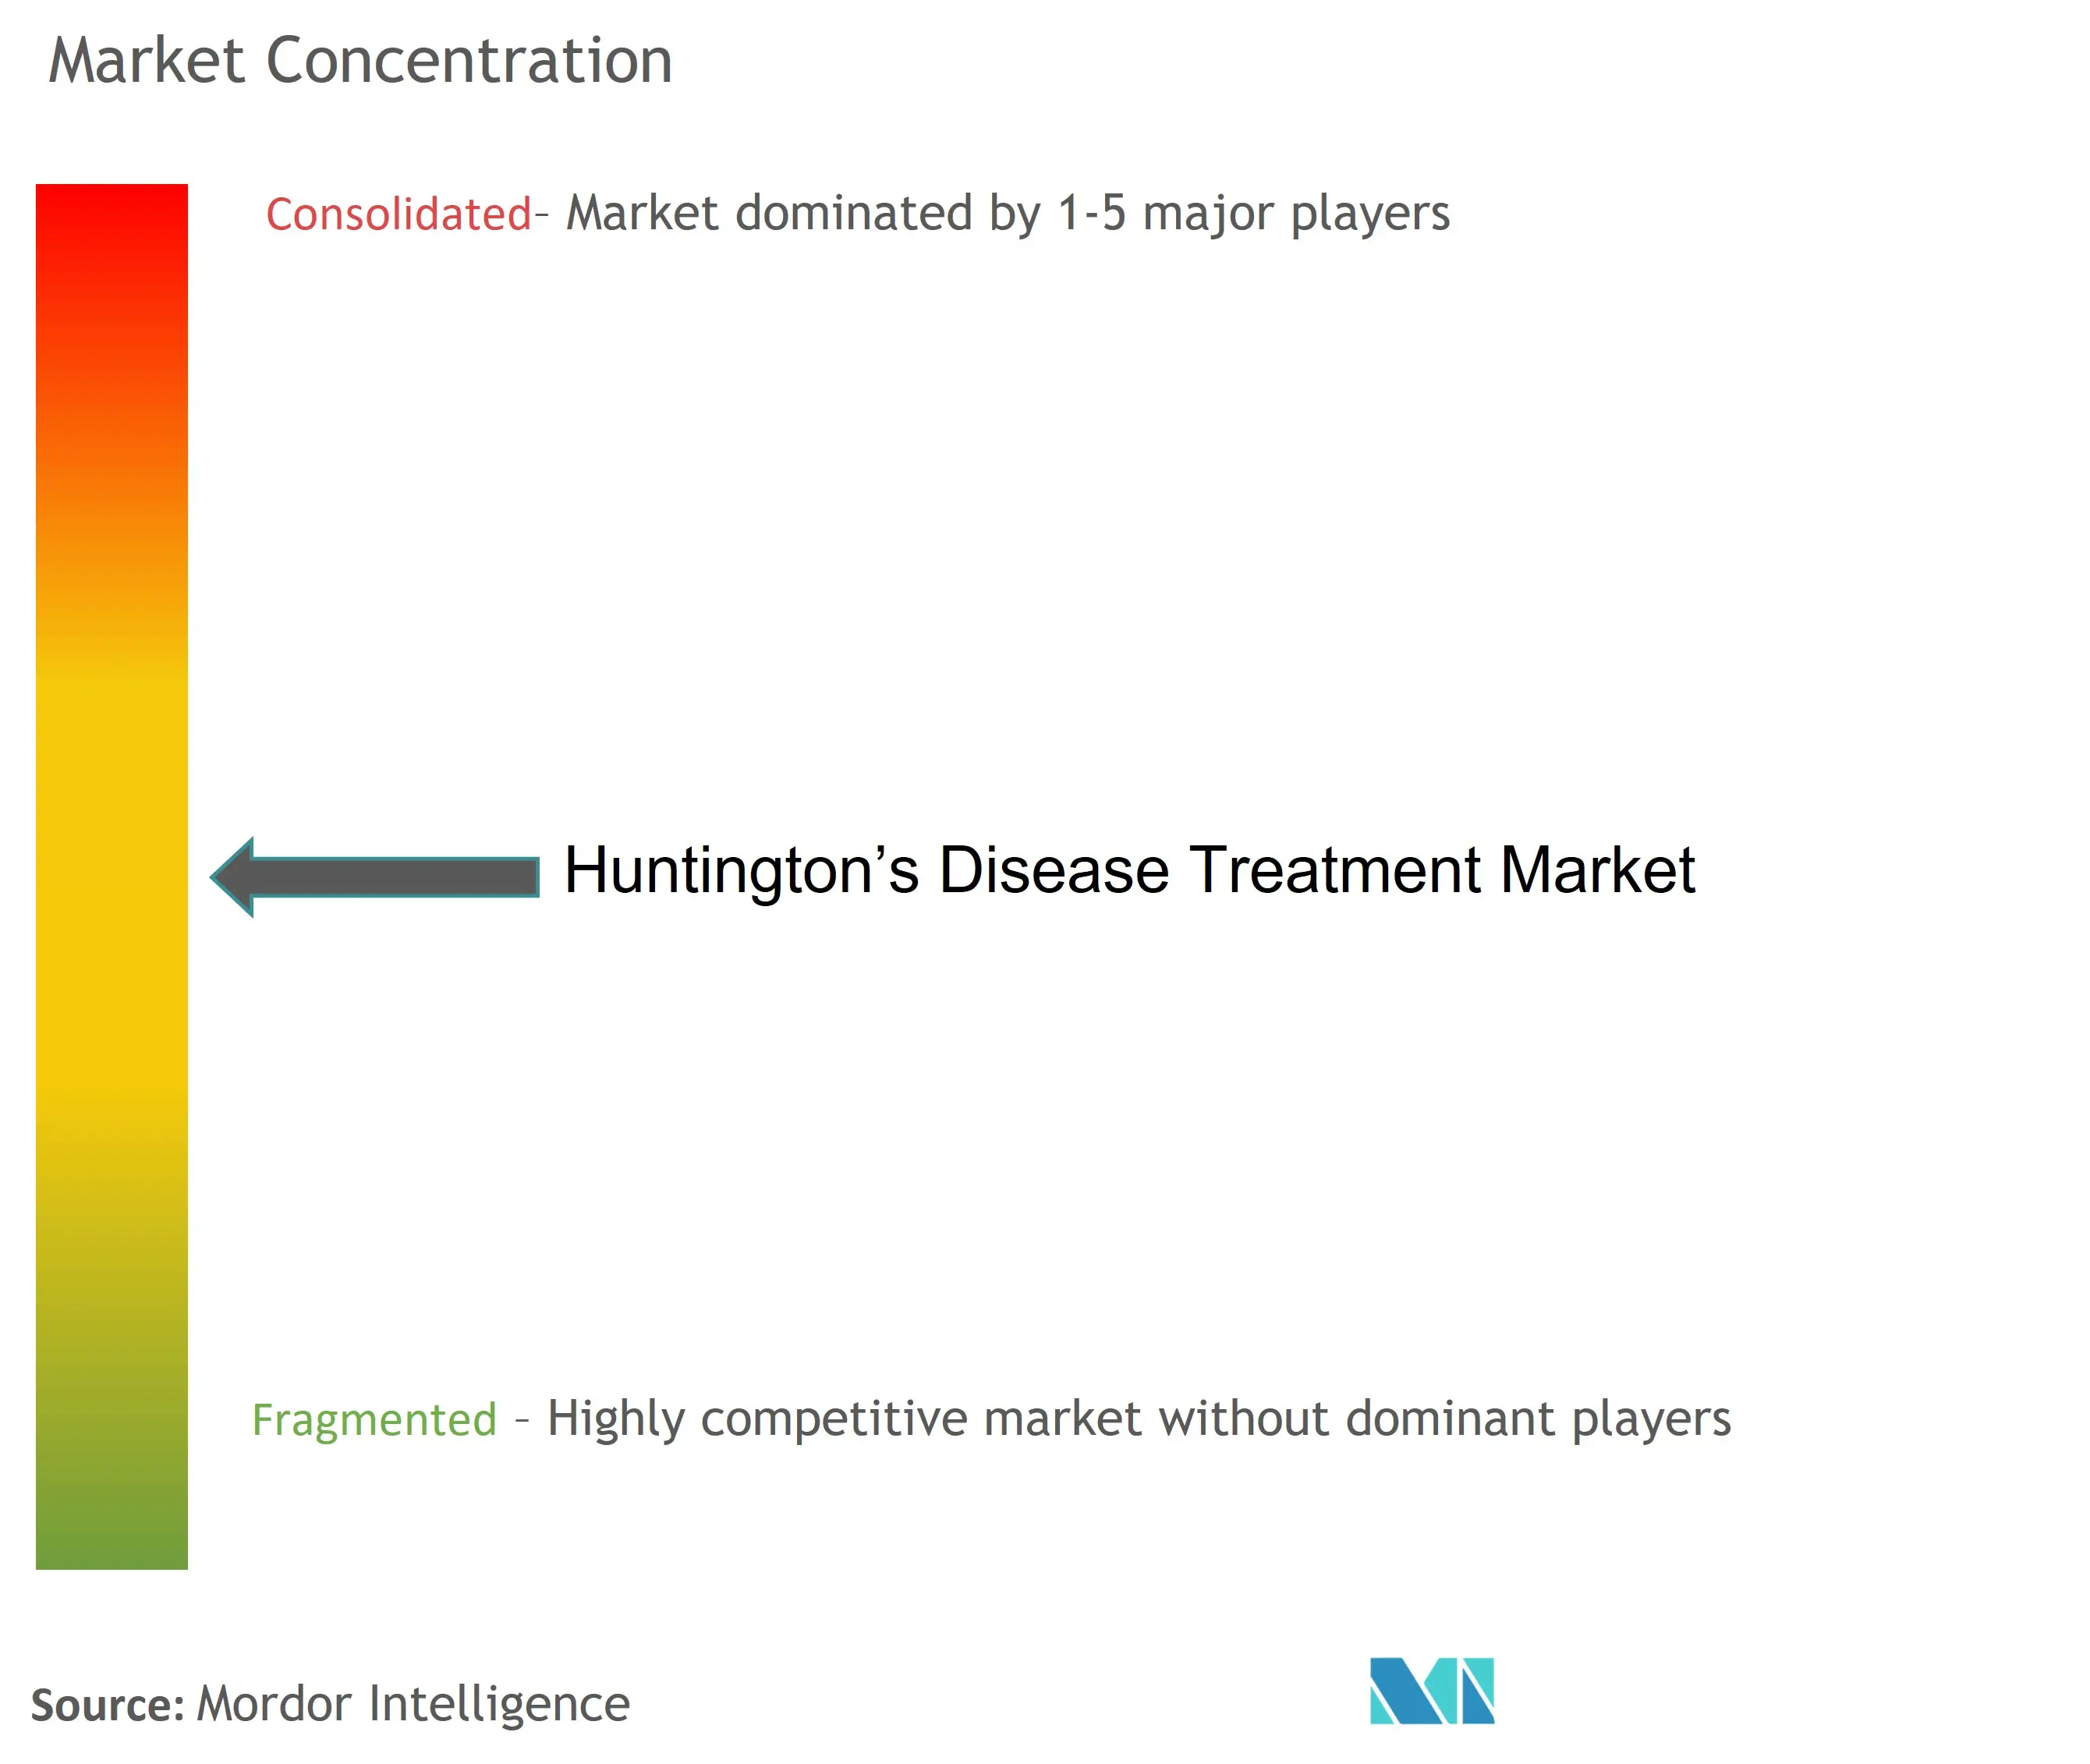 Huntington's Disease Treatment Market Concentration